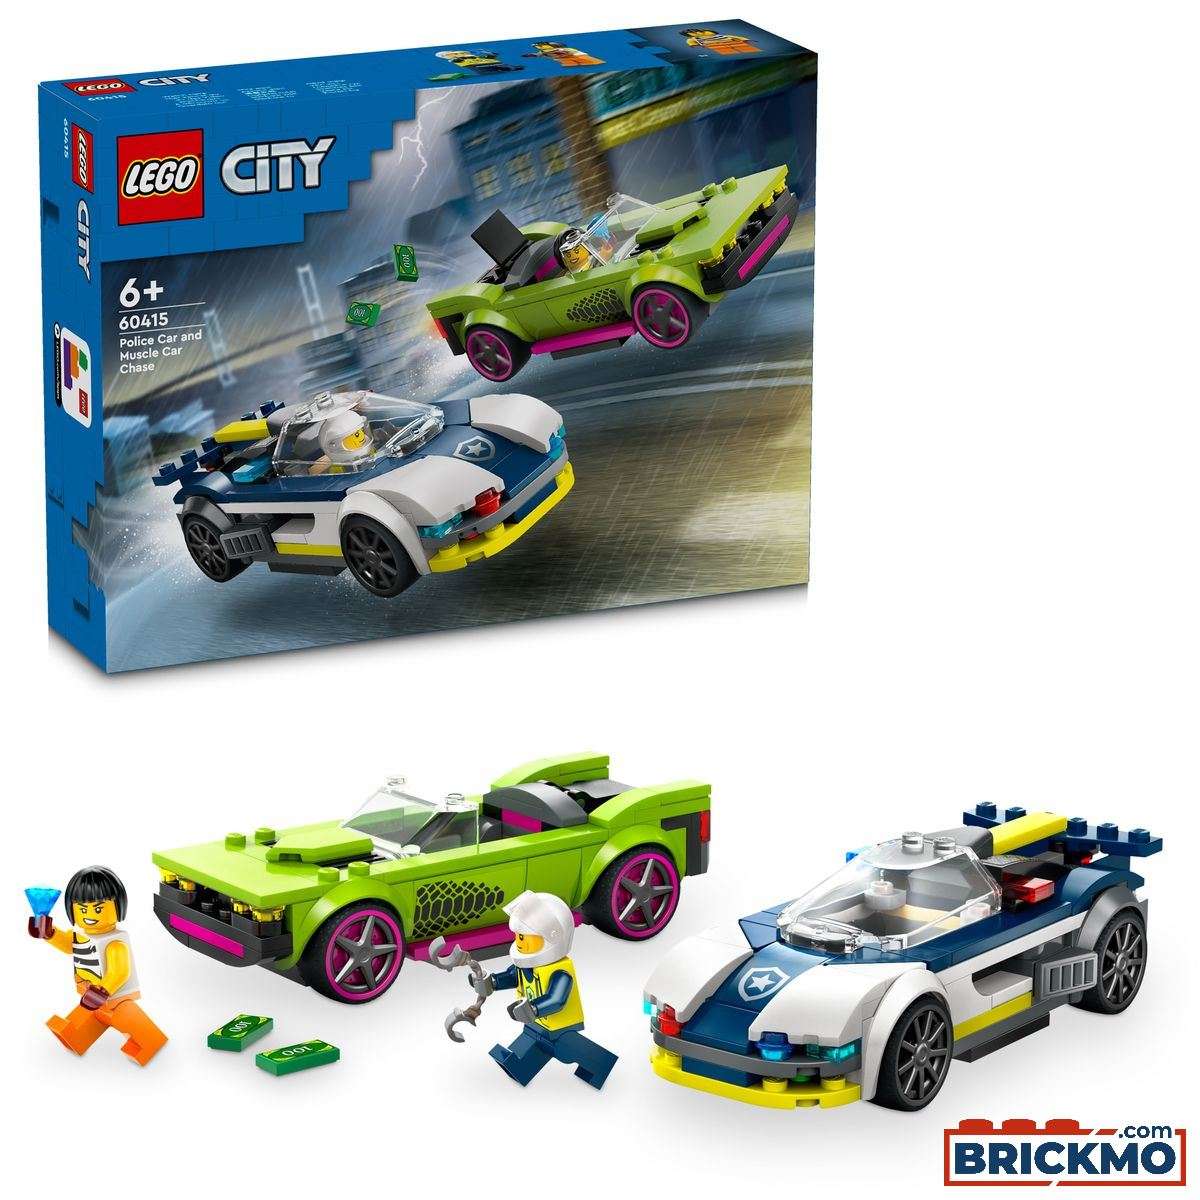 LEGO City 60415 Perseguição de Carro da Polícia a Muscle Car 60415